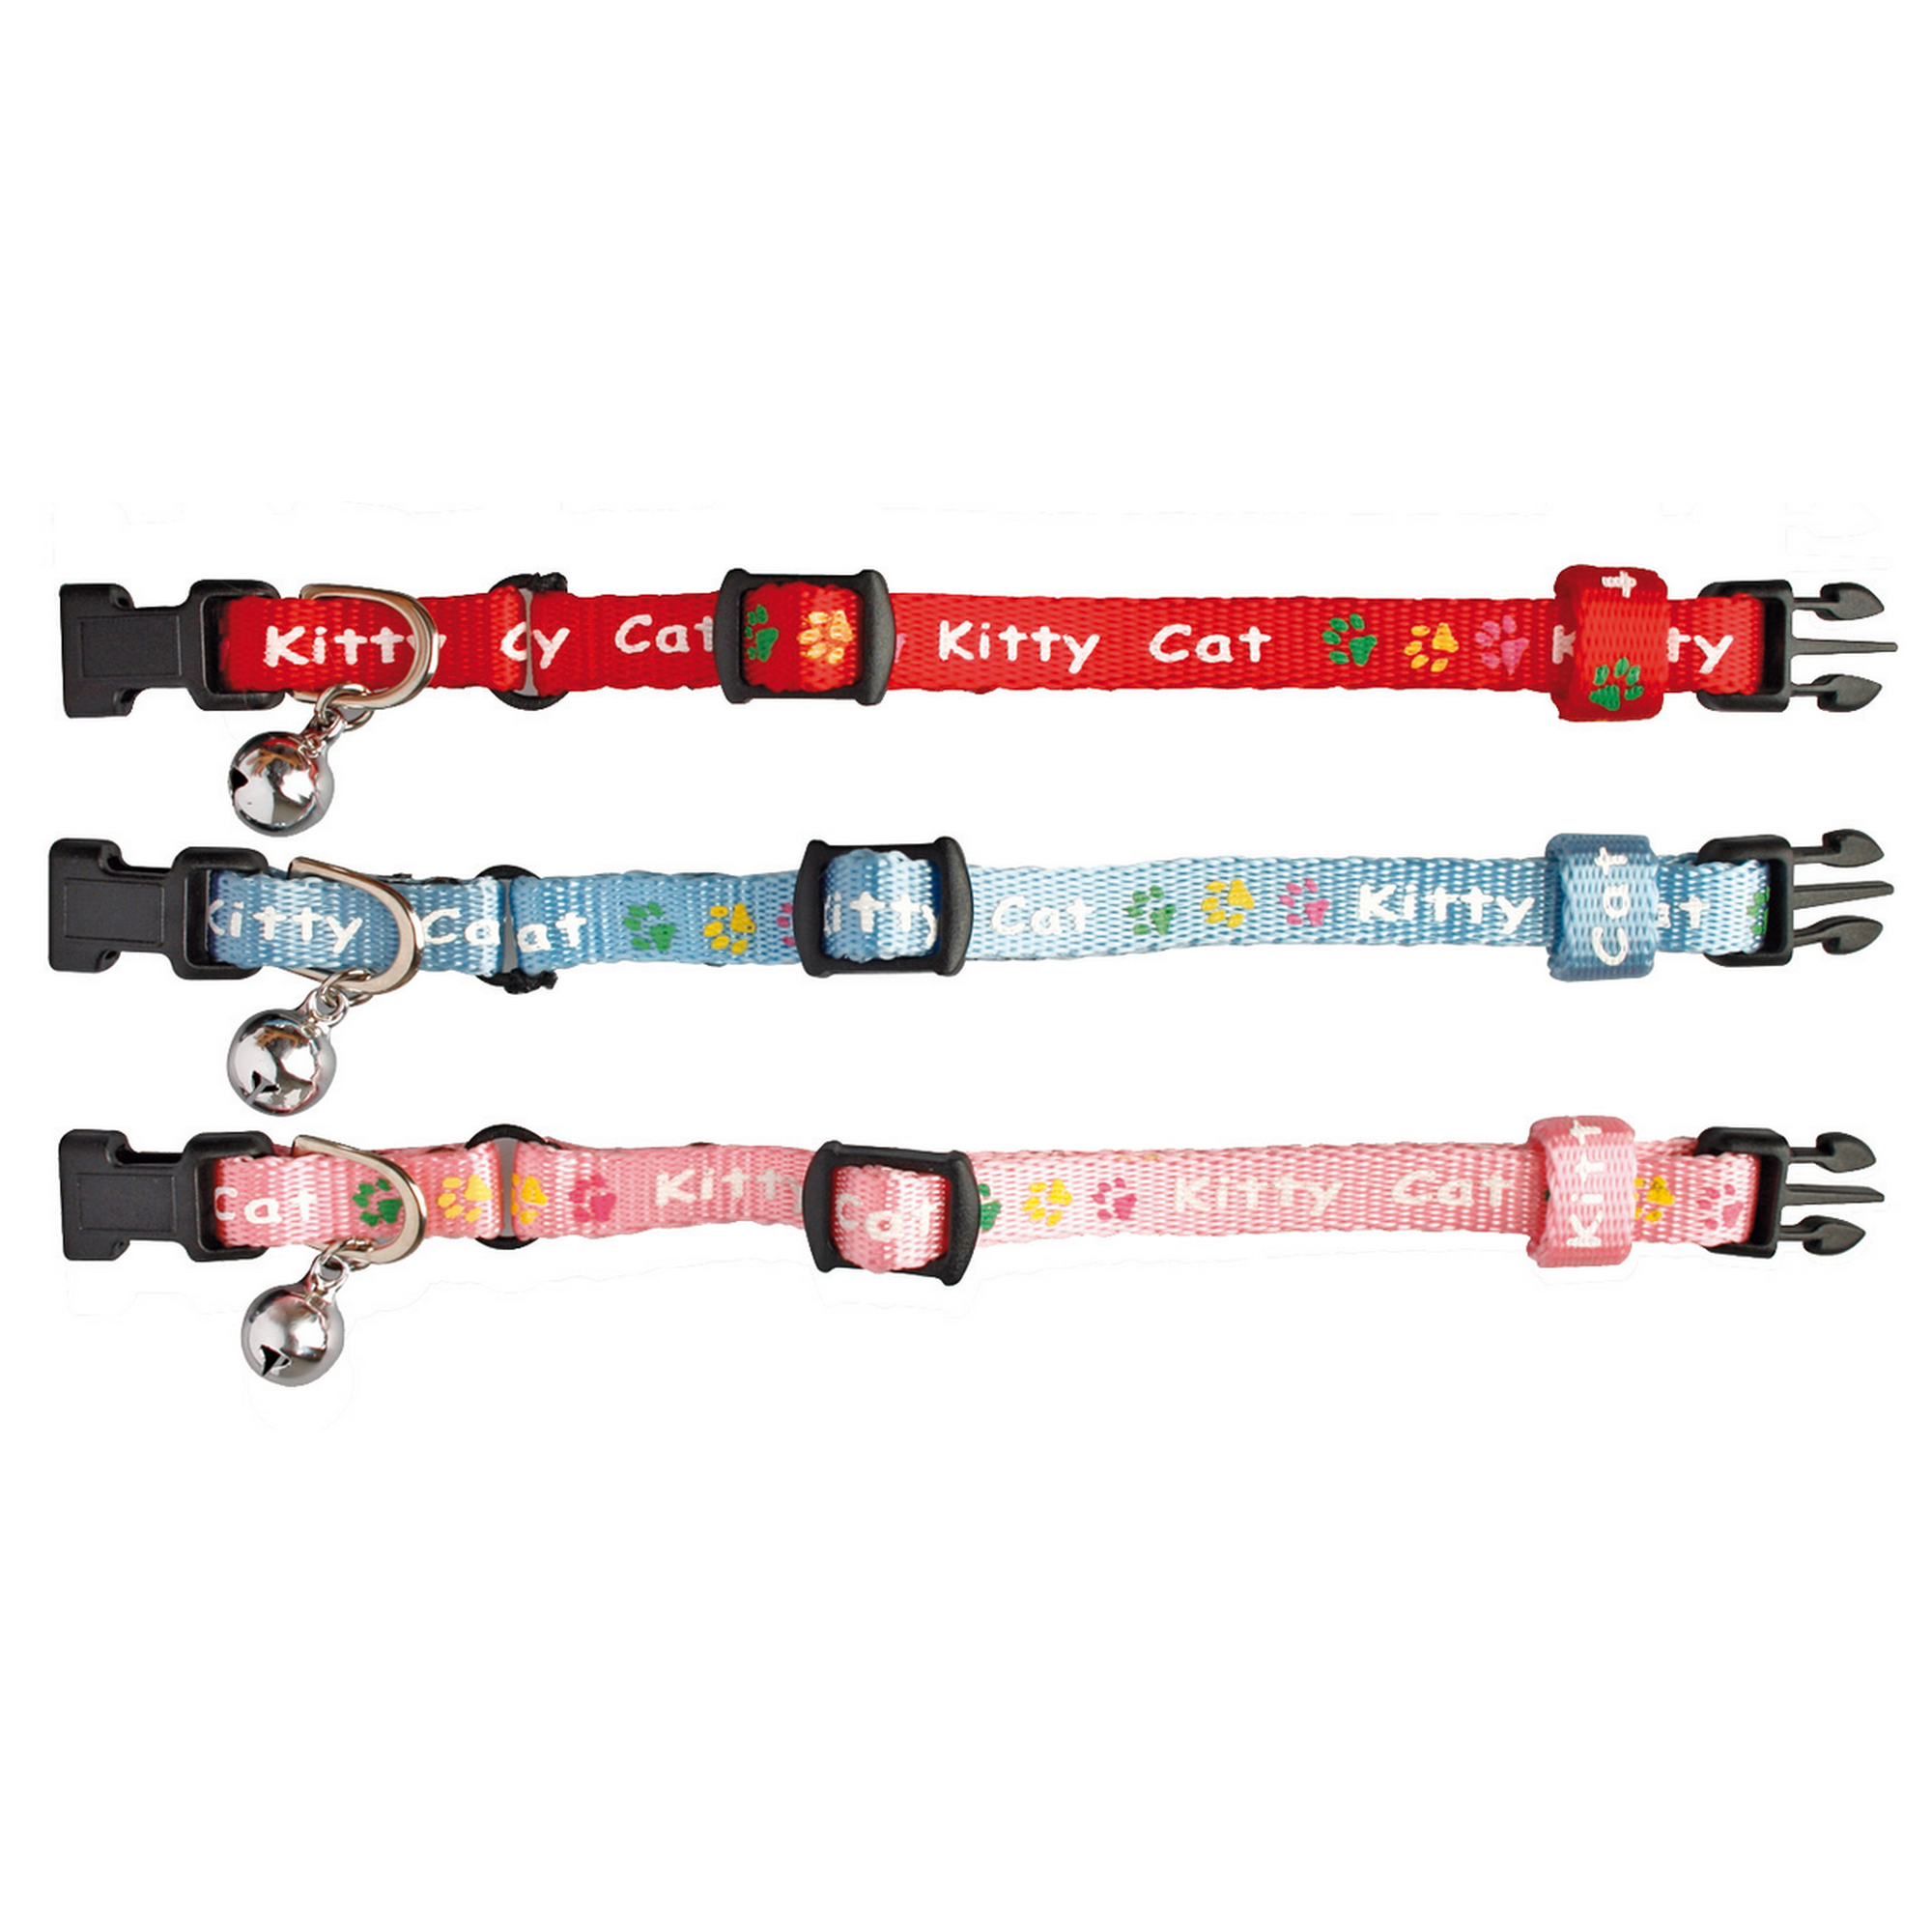 Katzenhalsband 'Kitty Cat' für junge Kätzchen 15-22 cm + product picture